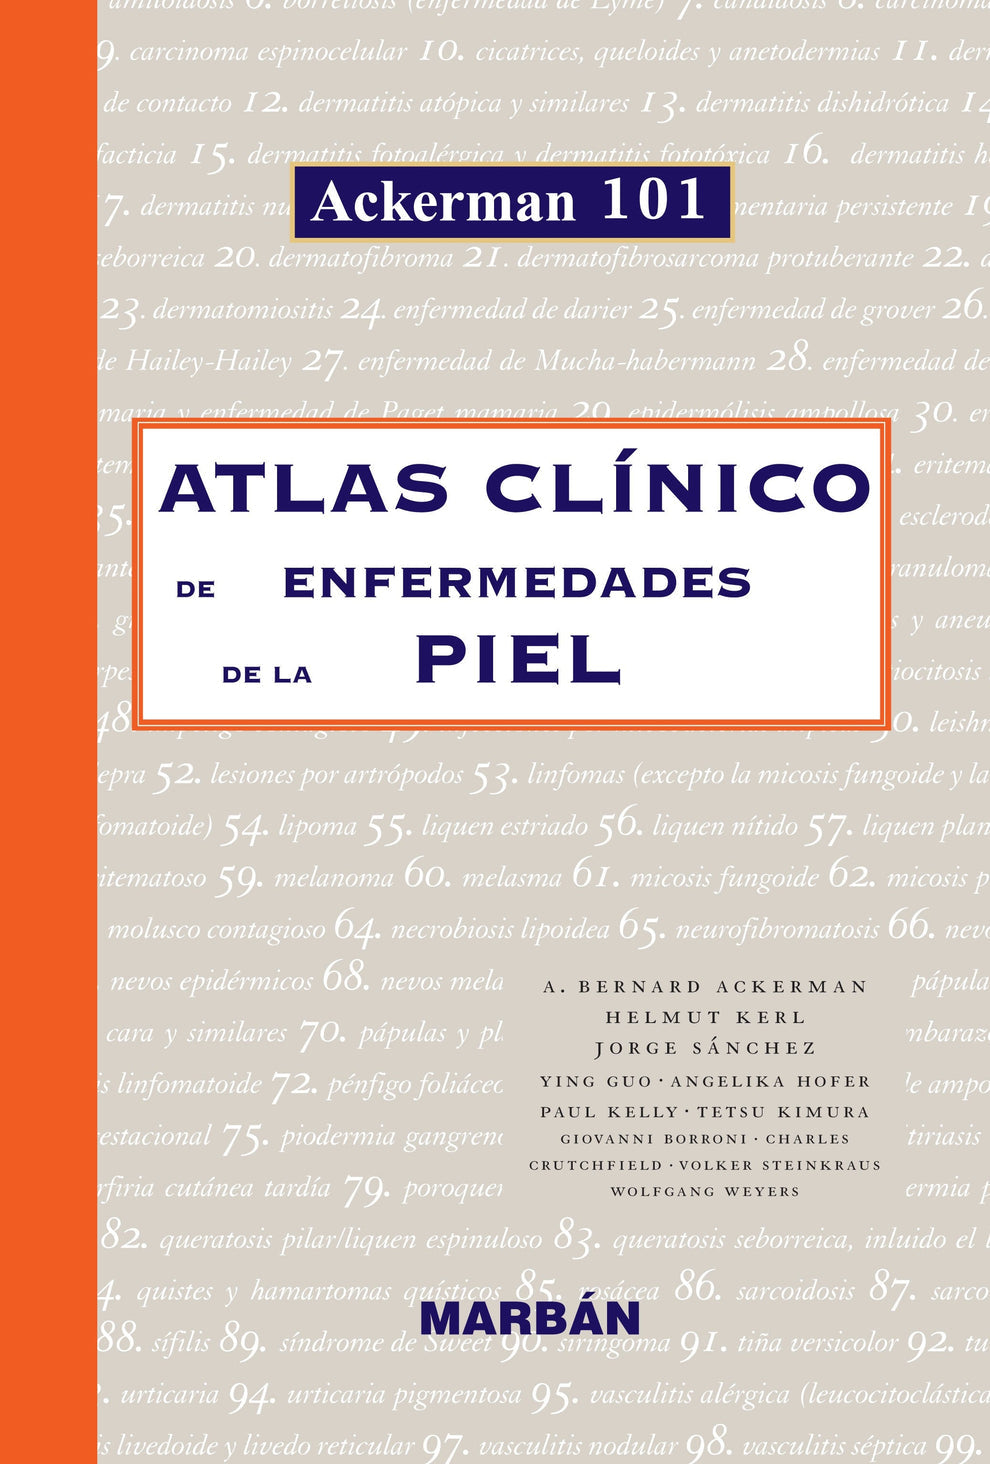 Atlas Clínico de Enfermedades de la Piel - Ackerman 101